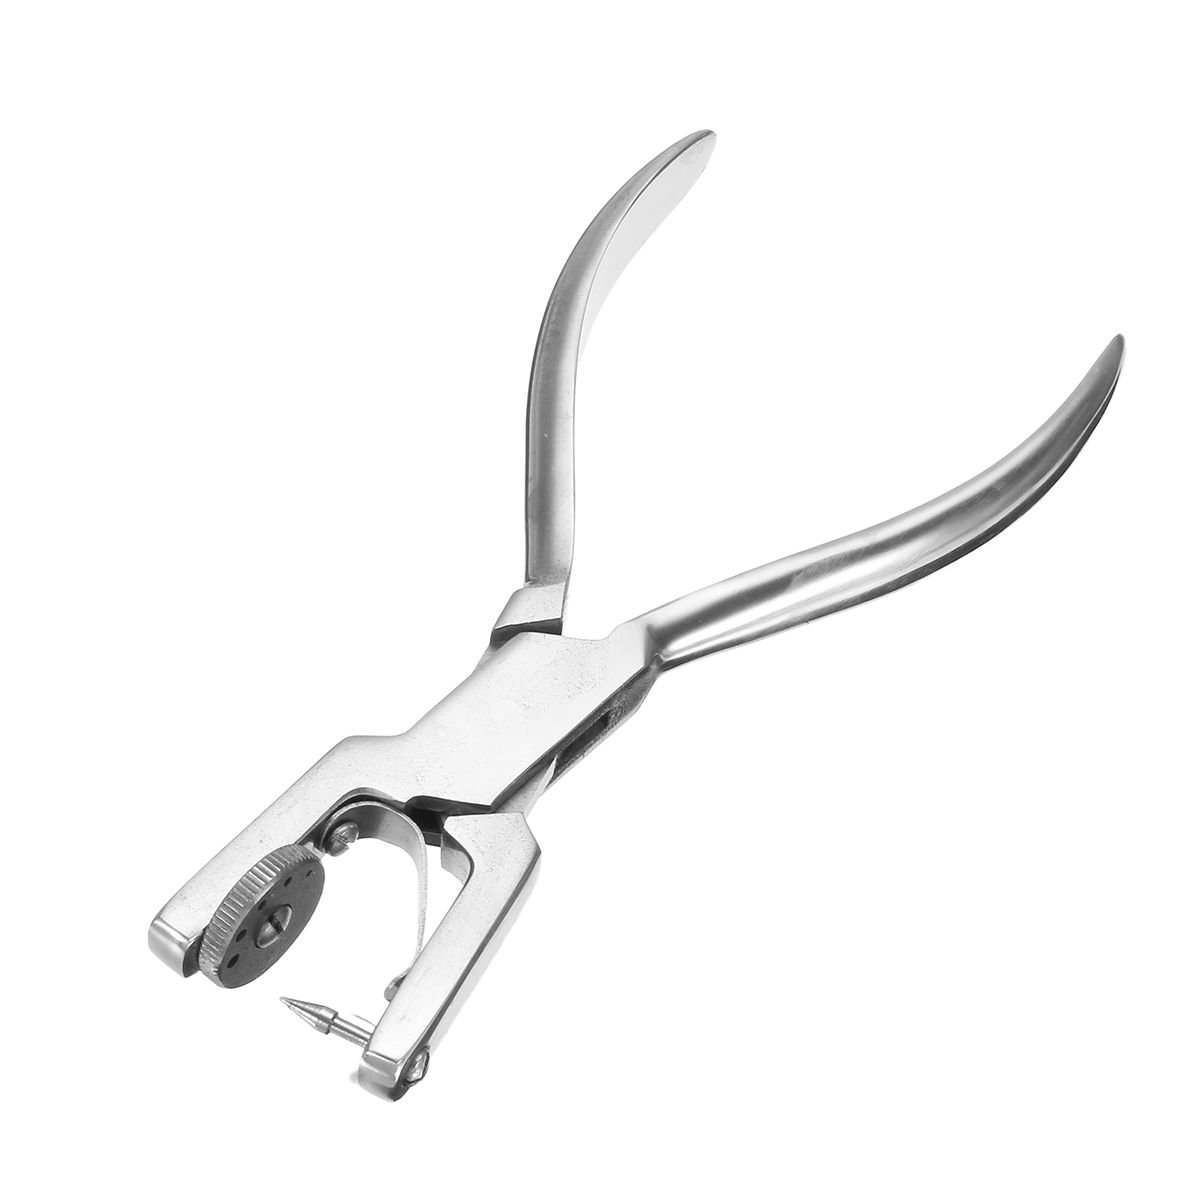 Dental-Dentist-Basic-Rubber-Dam-Kit-Dental-Tools-Surgical-Instruments-Set-1382163